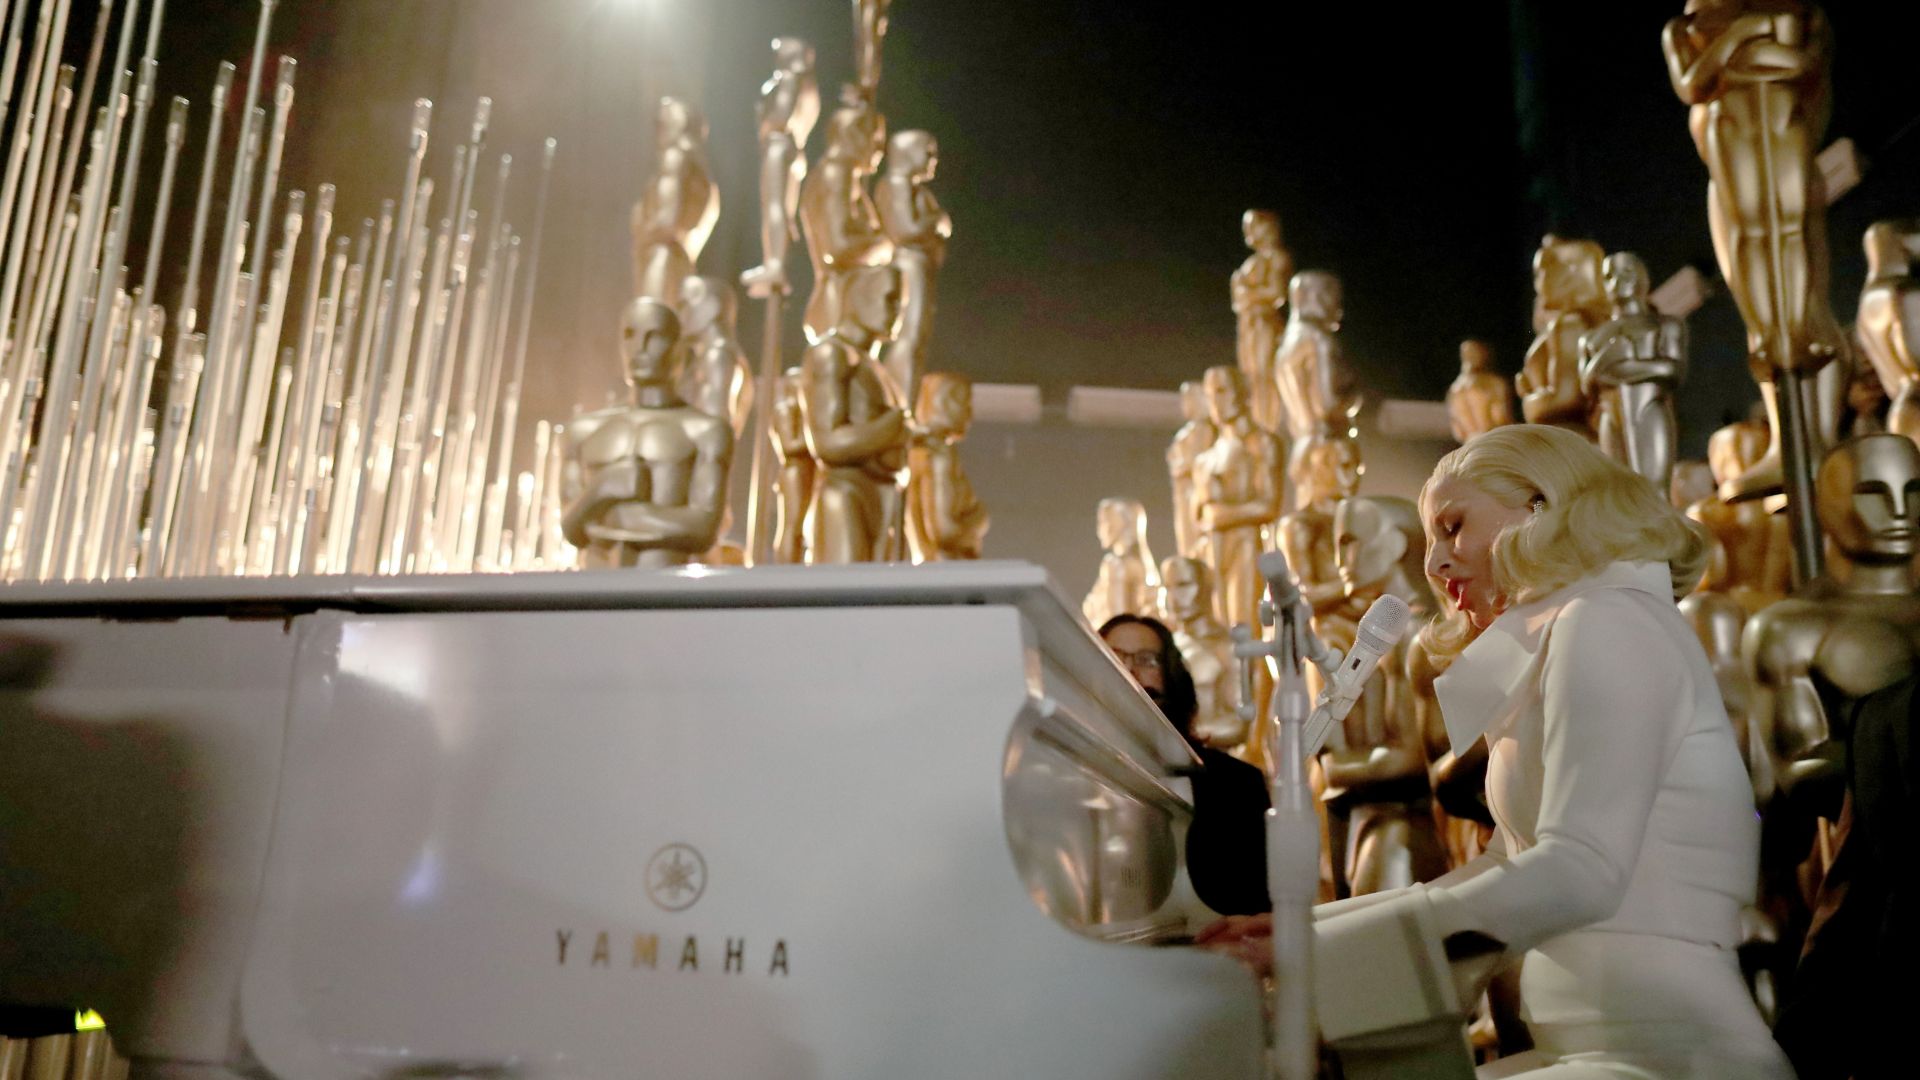 Леди Гага, Оскар 2016, Выступление, , Самые популярные знаменитости, Lady Gaga, Oscar 2016, perfomance, Til It Happens to You, Most popular celebs (horizontal)